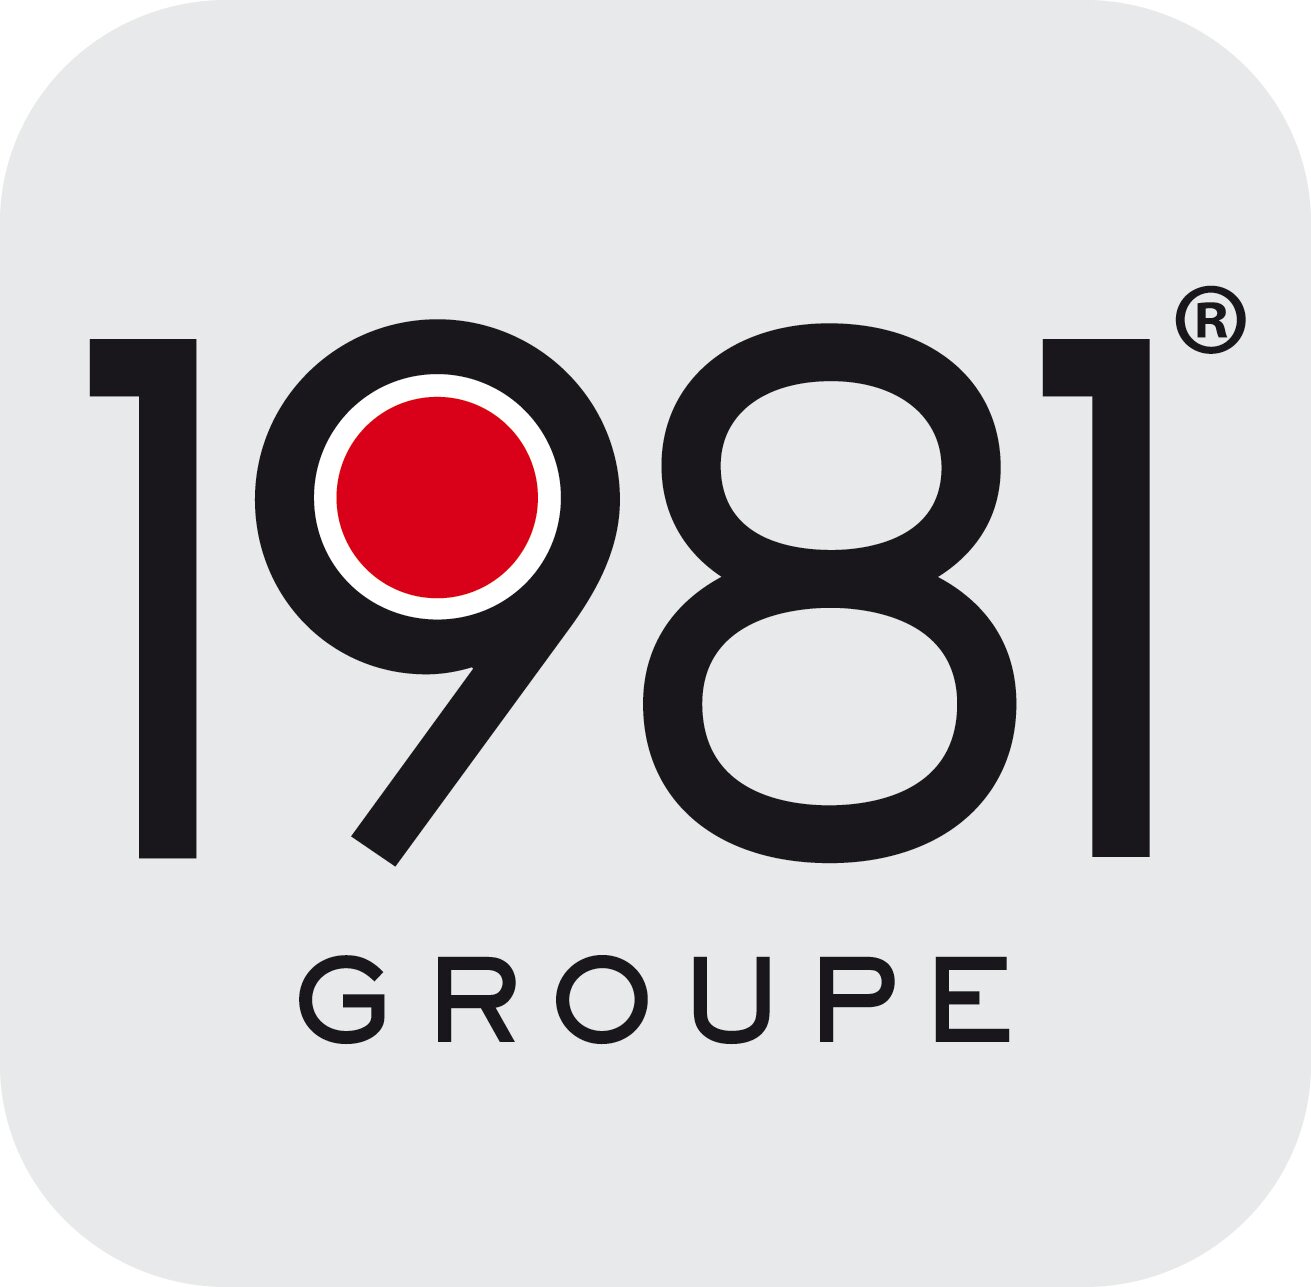 Journée de langue française sur les radios du Groupe 1981